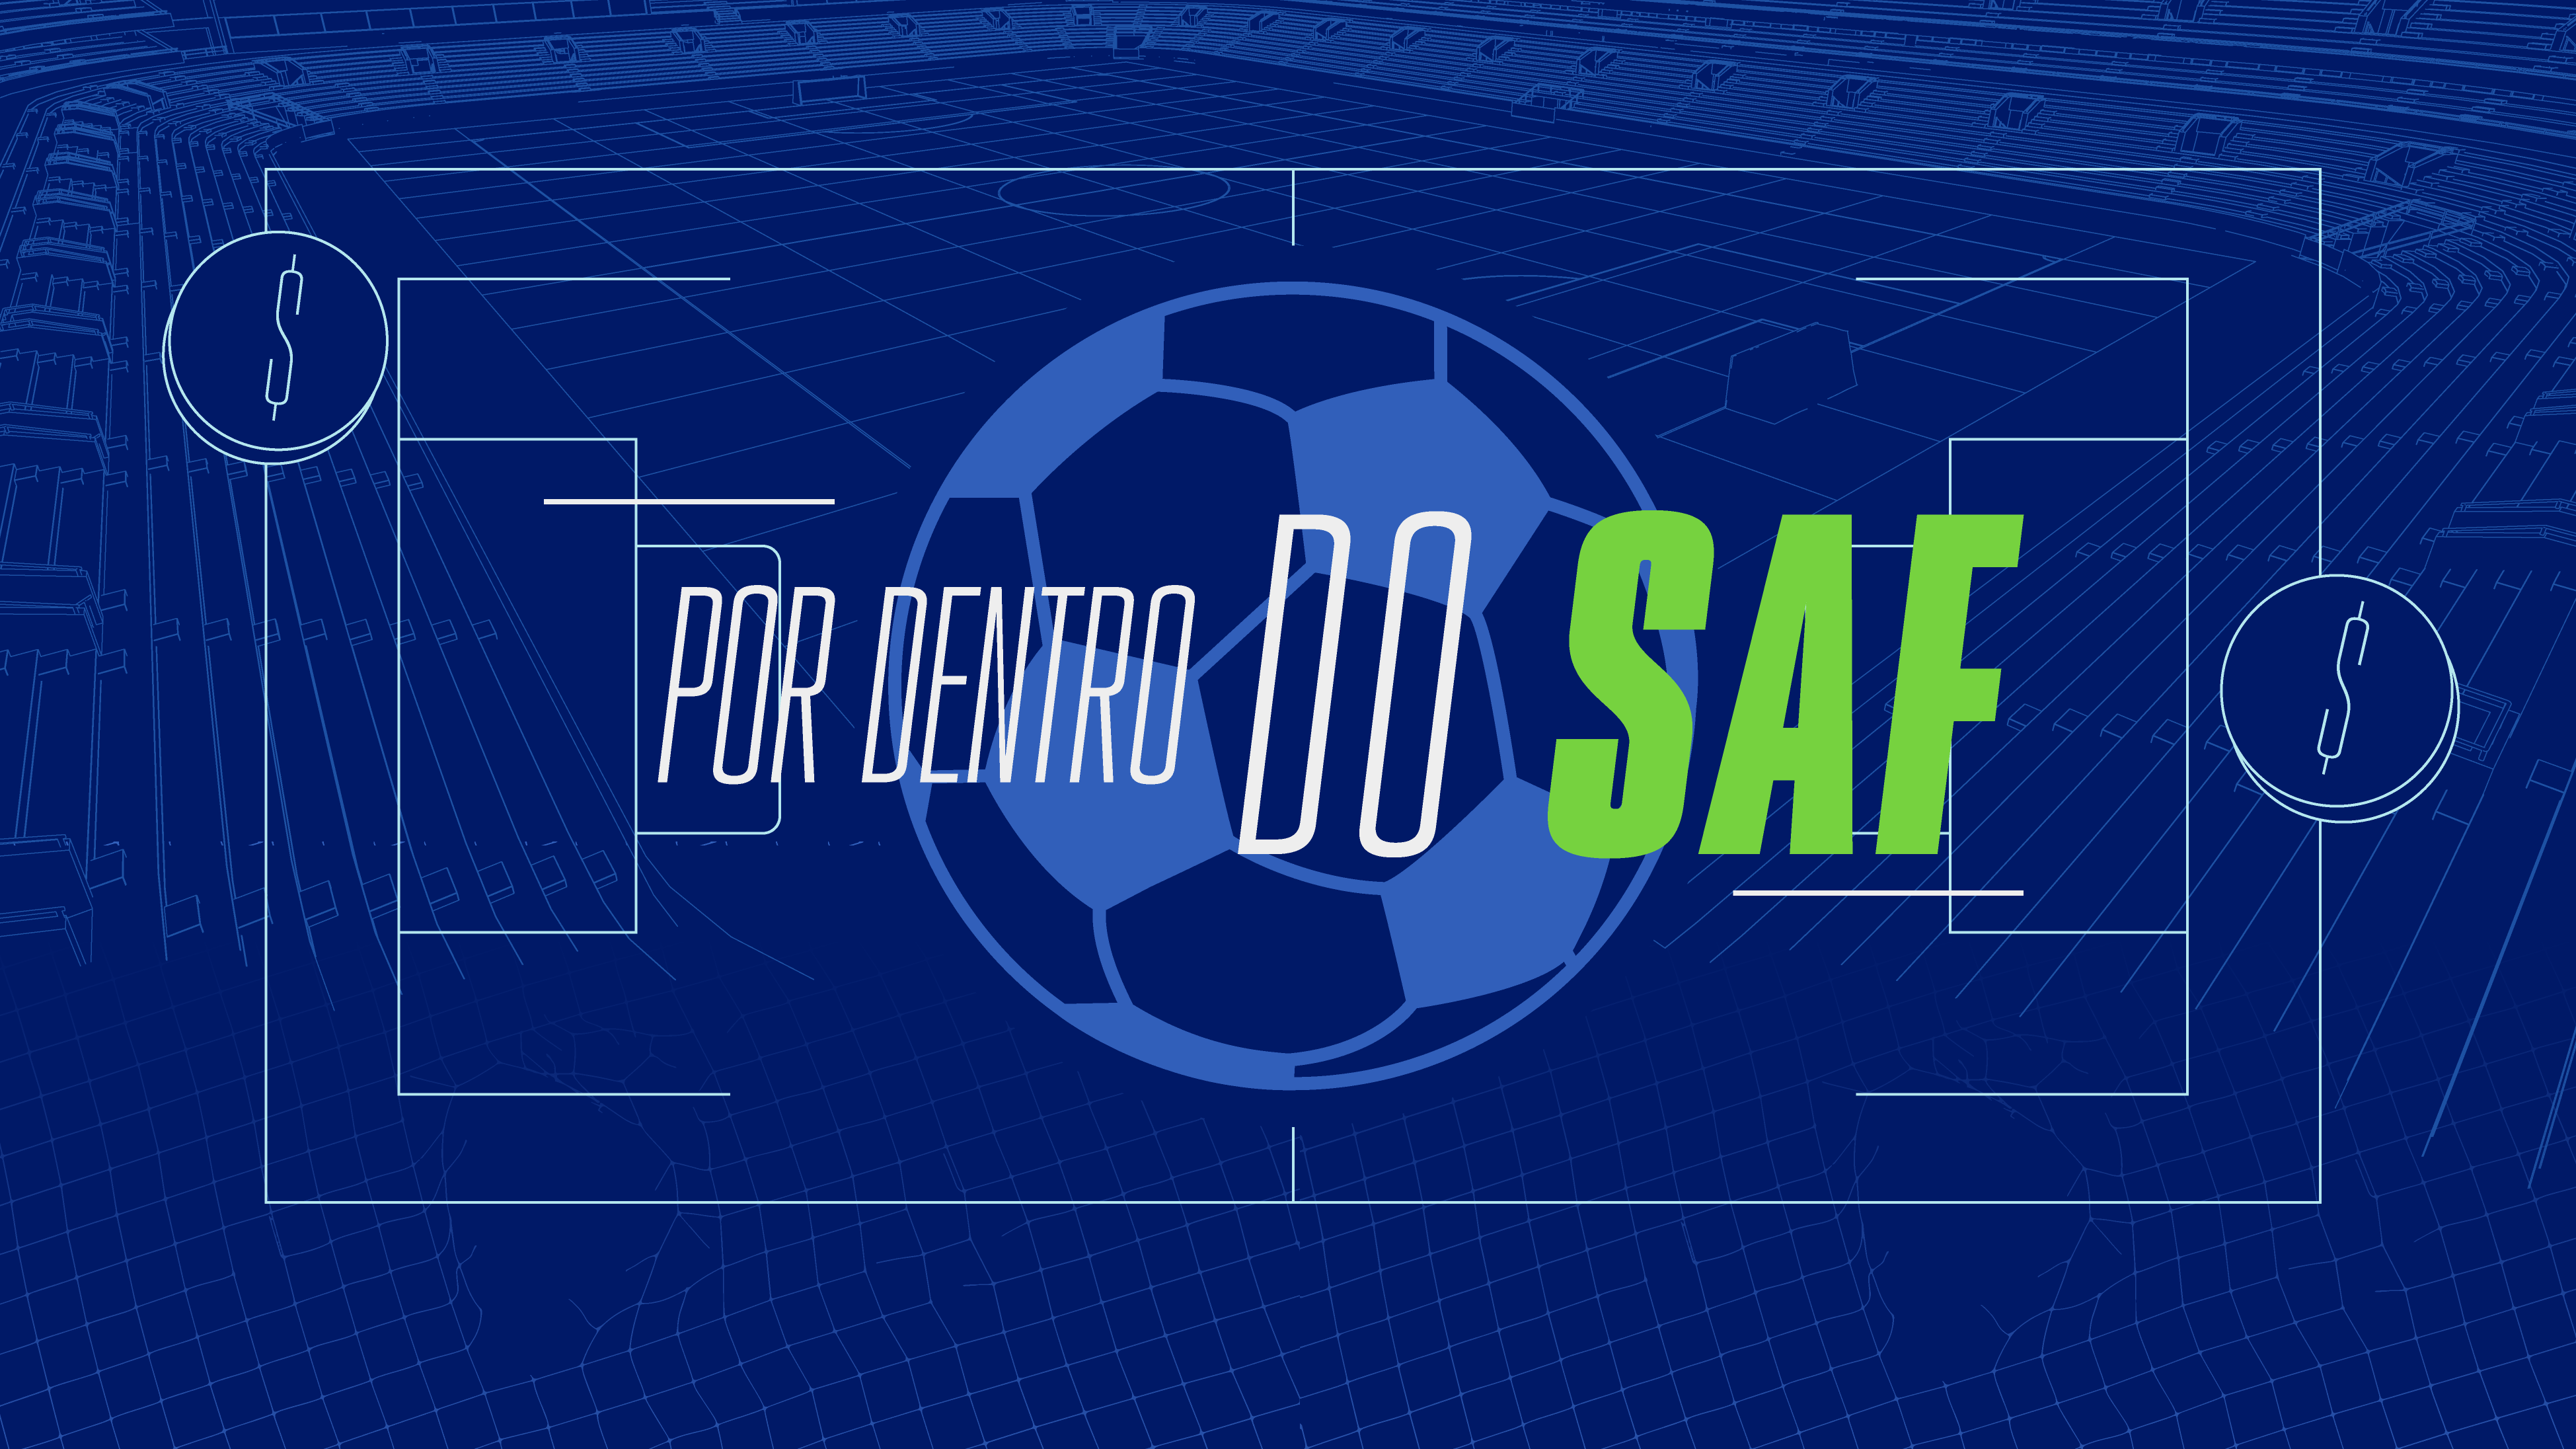 Jogo Aberto: Lei de SAF e Recuperação Judicial dos Clubes de Futebol ONLINE  S/D - ESA CE